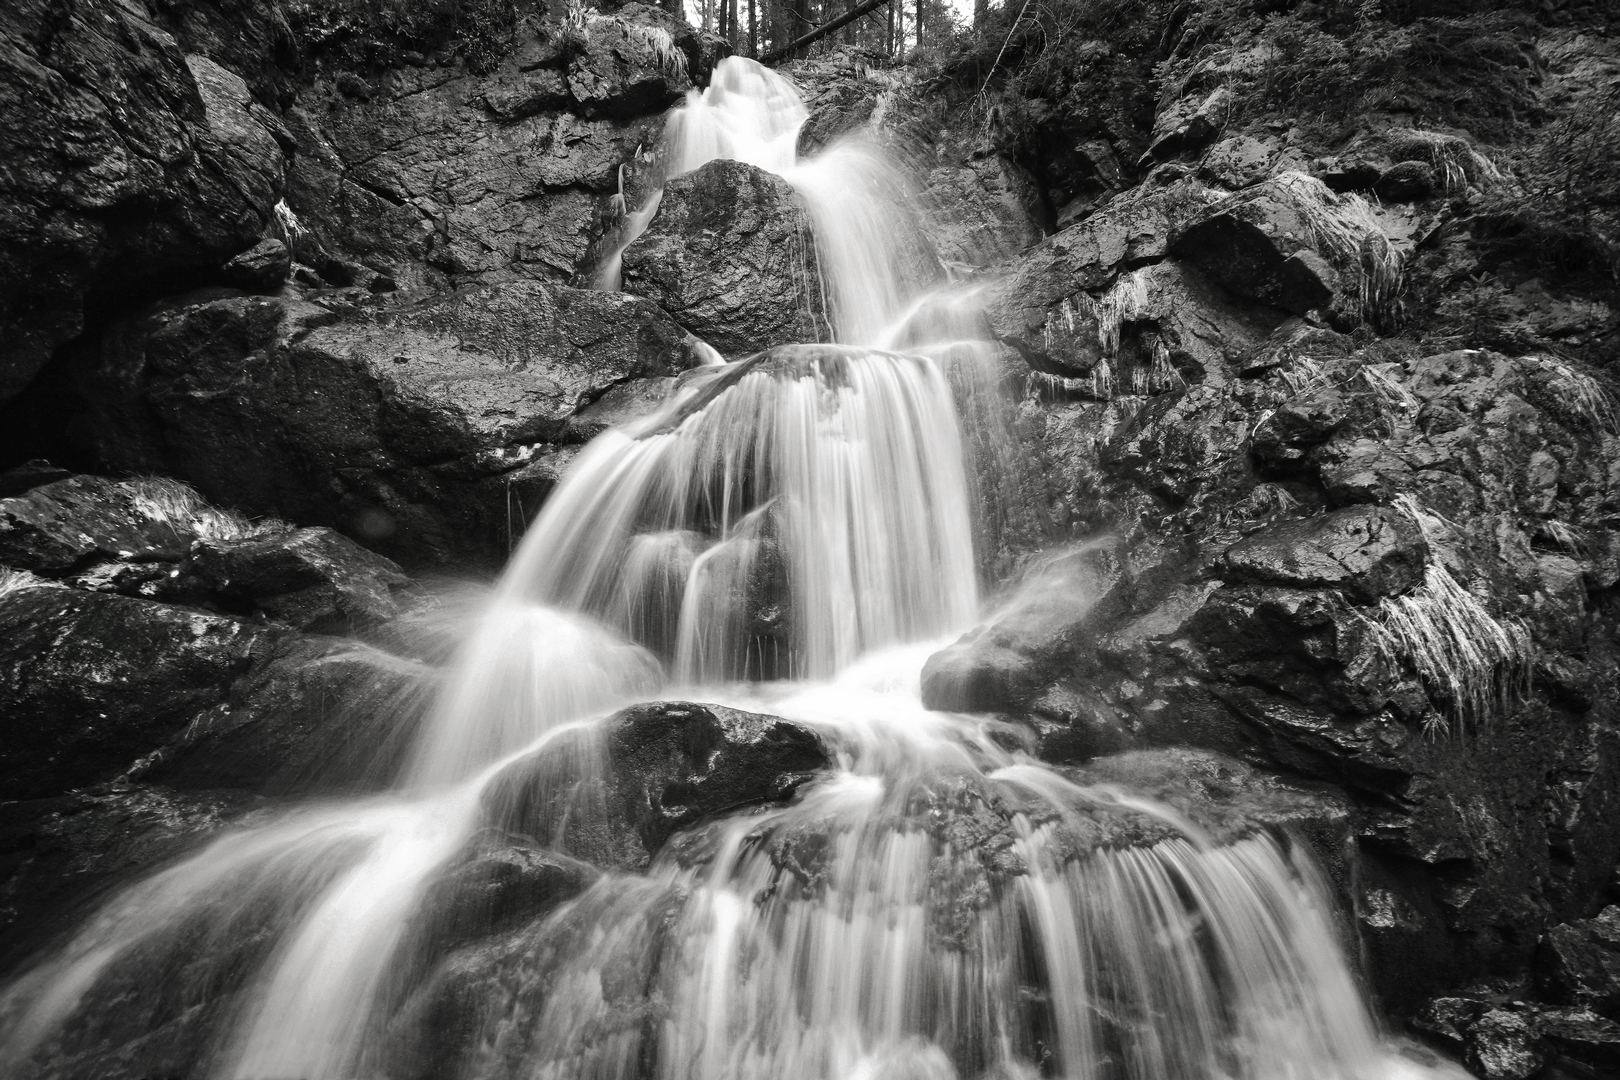 Risloch Wasserfälle im Bayerischen Wald